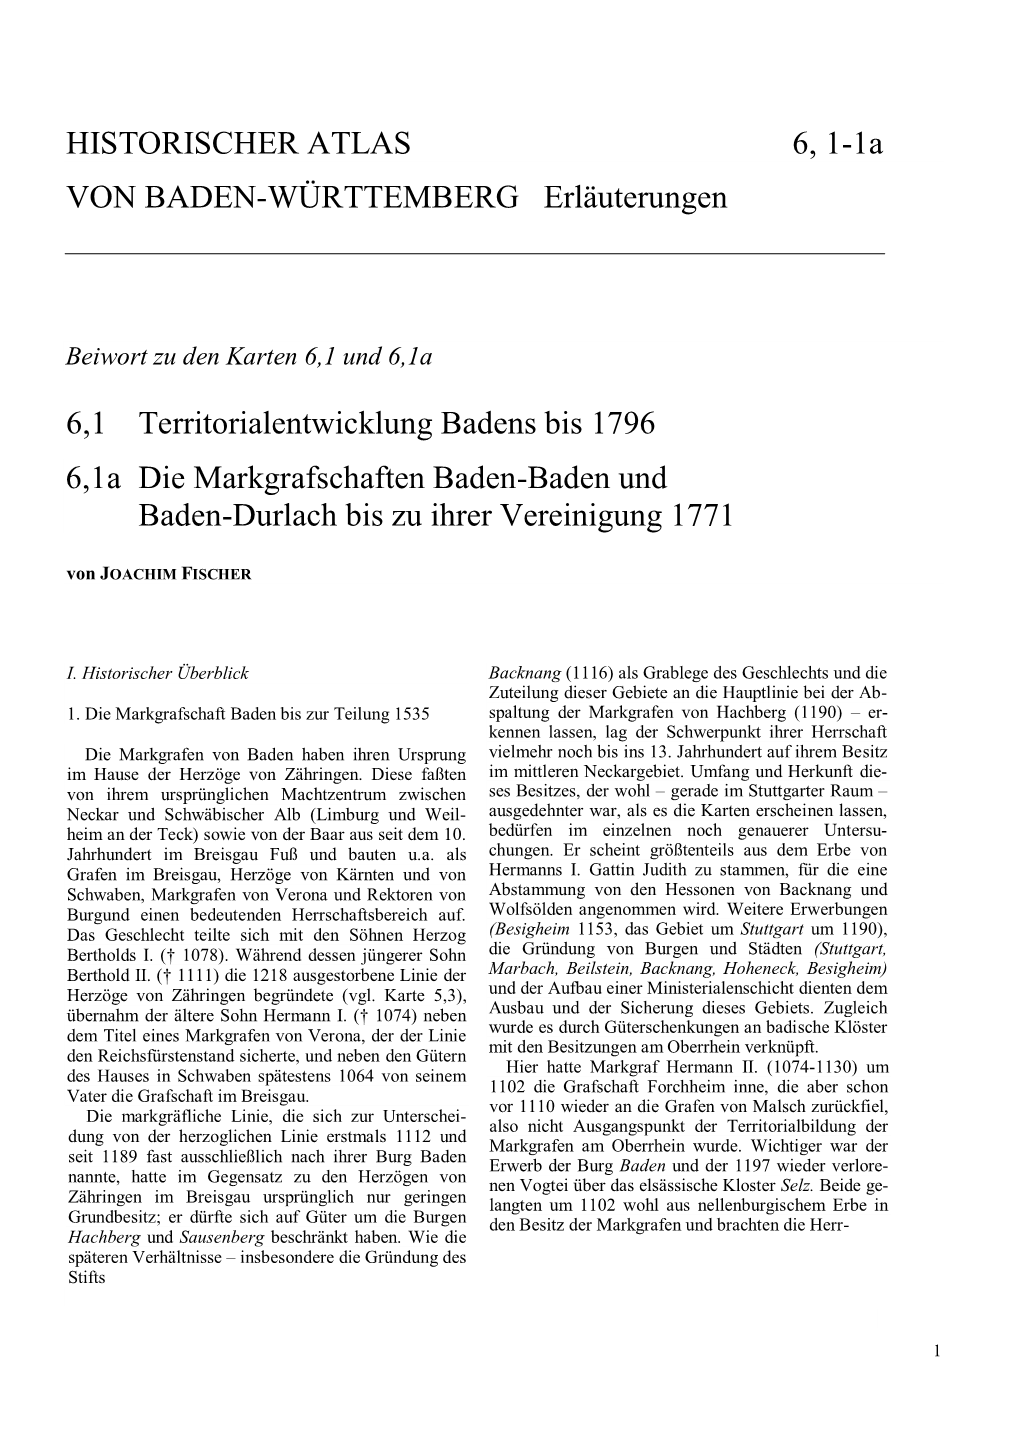 HISTORISCHER ATLAS 6, 1-1A VON BADEN-WÜRTTEMBERG